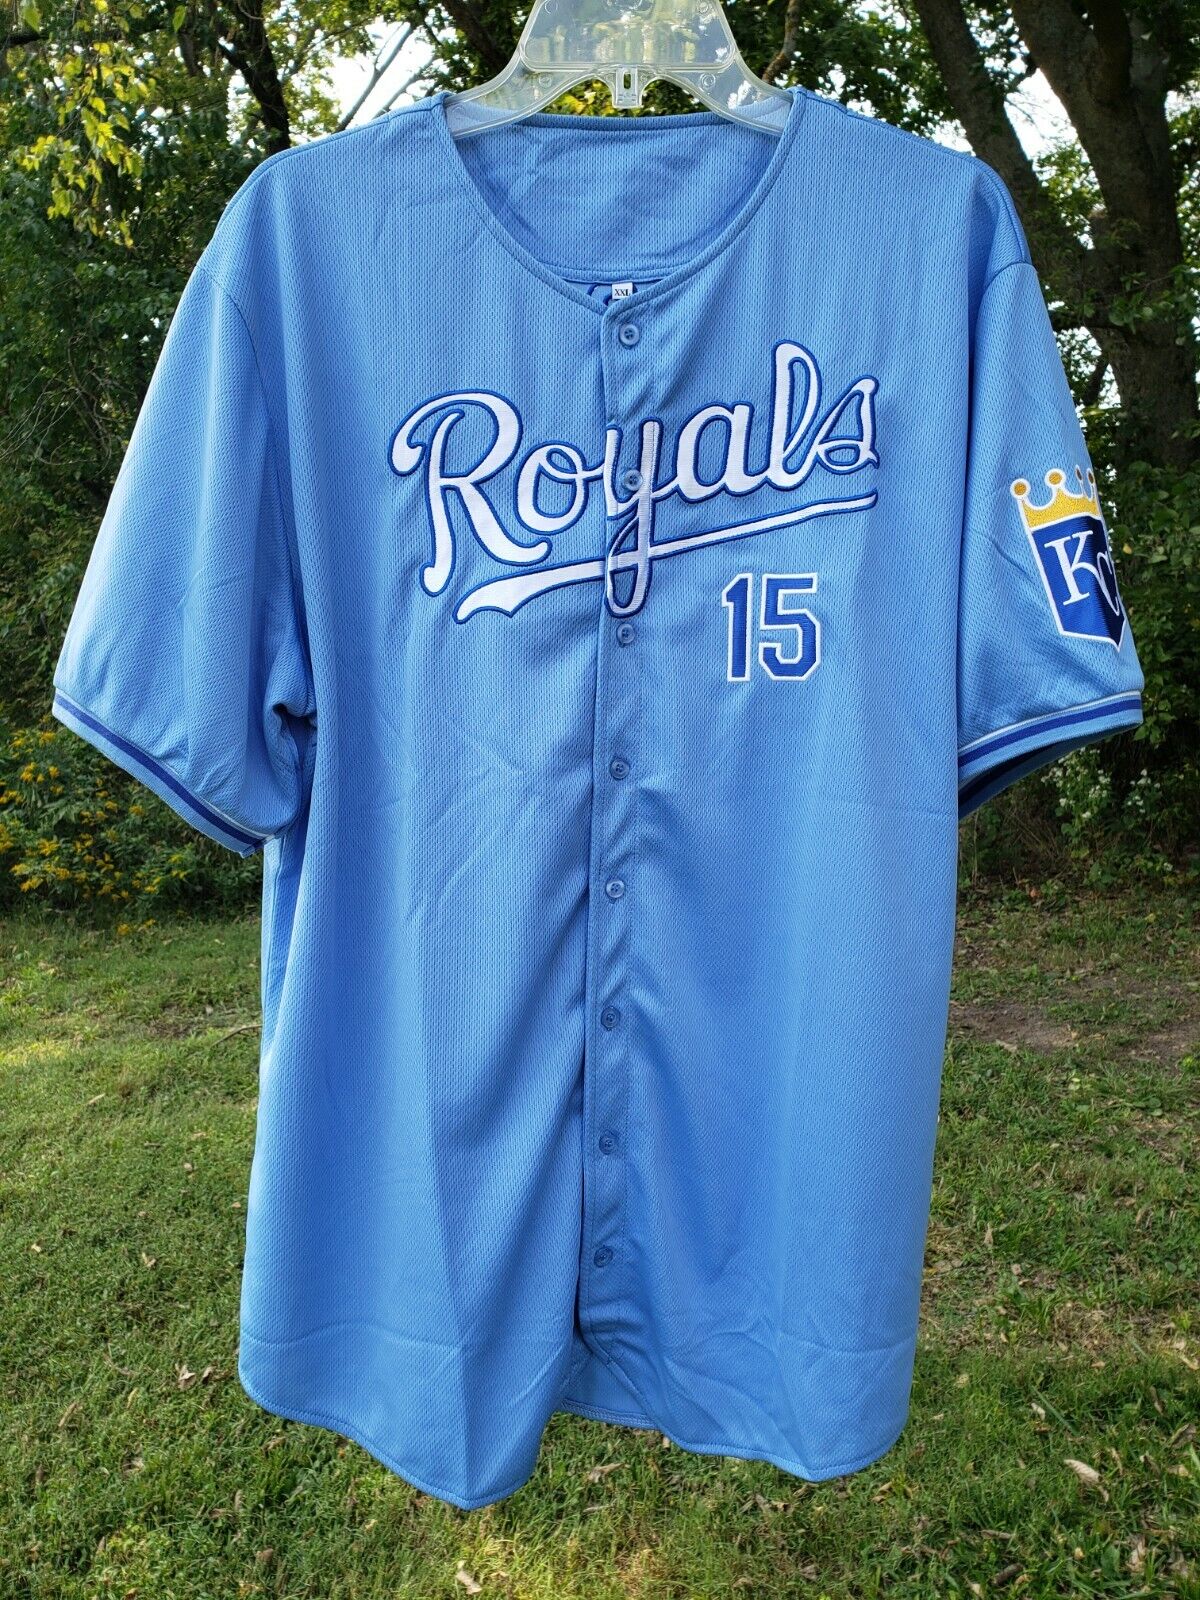 40% OFF Cheap Sale Patrick Mahomes Kansas City Royals XL Men's Uniform Jersey Shirt Challenge the lowest price